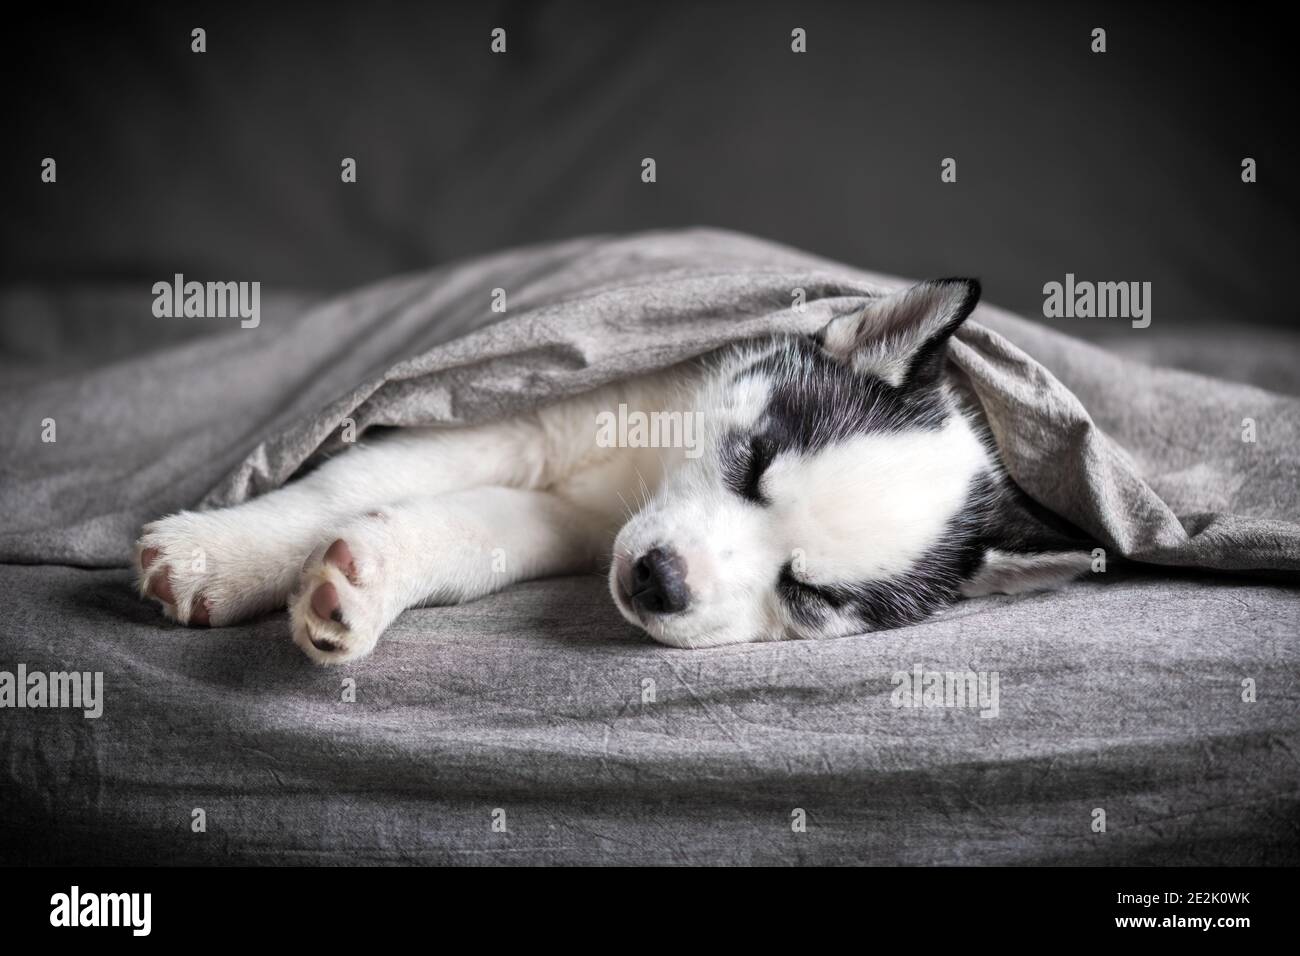 Ein kleiner weißer Hund Welpe Rasse sibirischen Husky mit schönen blauen Augen liegt auf grauem Teppich. Hunde und Tierfotografie Stockfoto